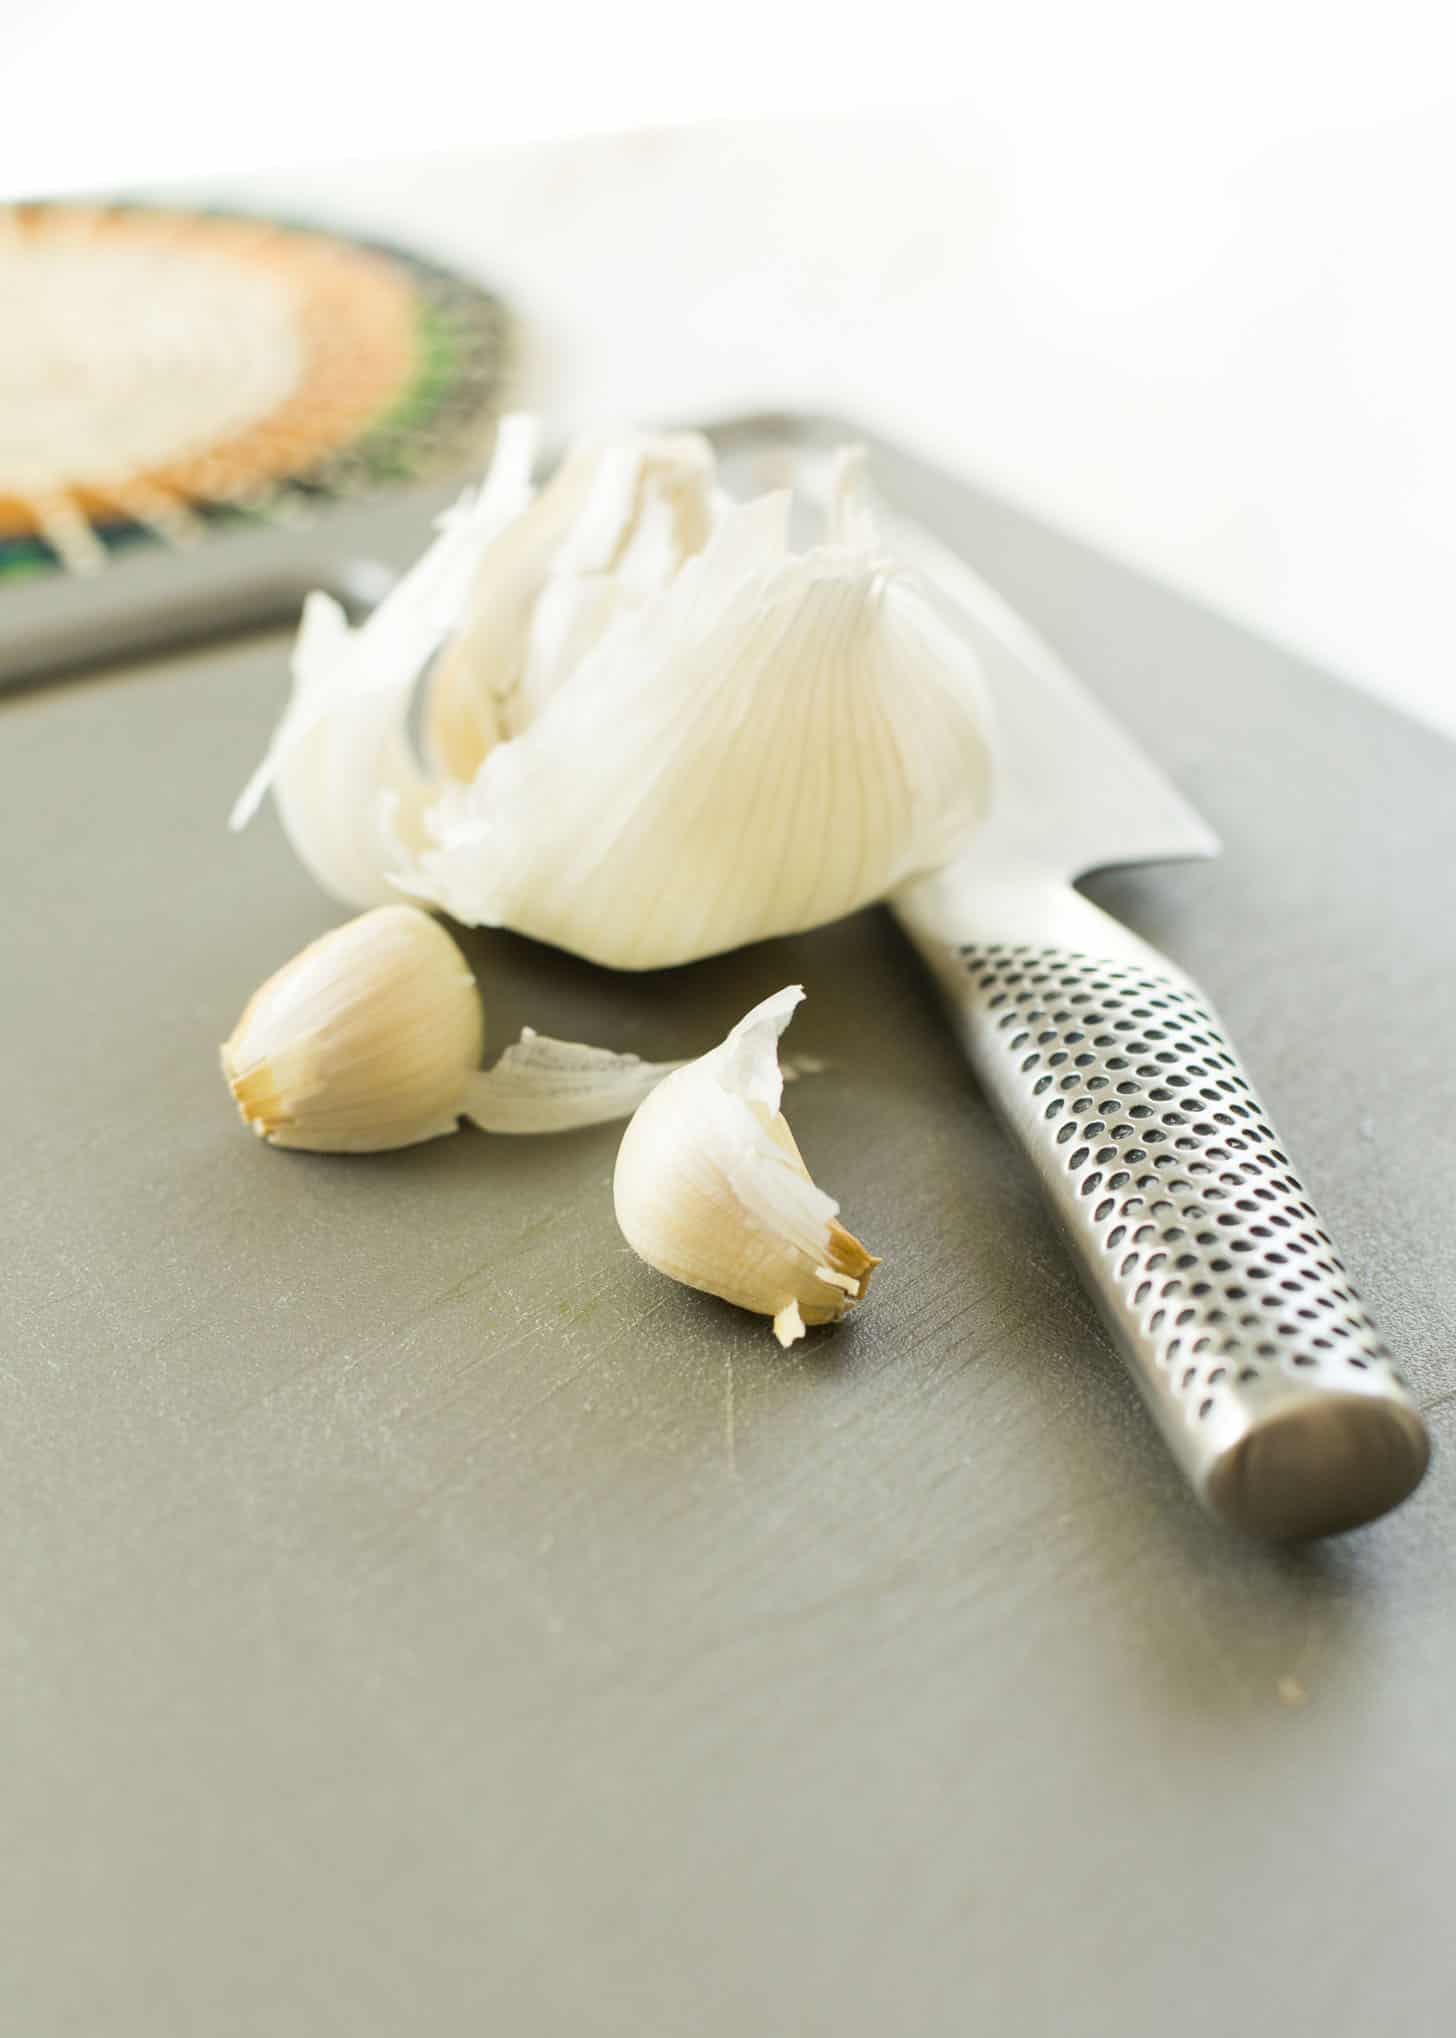 cloves of garlic on a grey cutting board